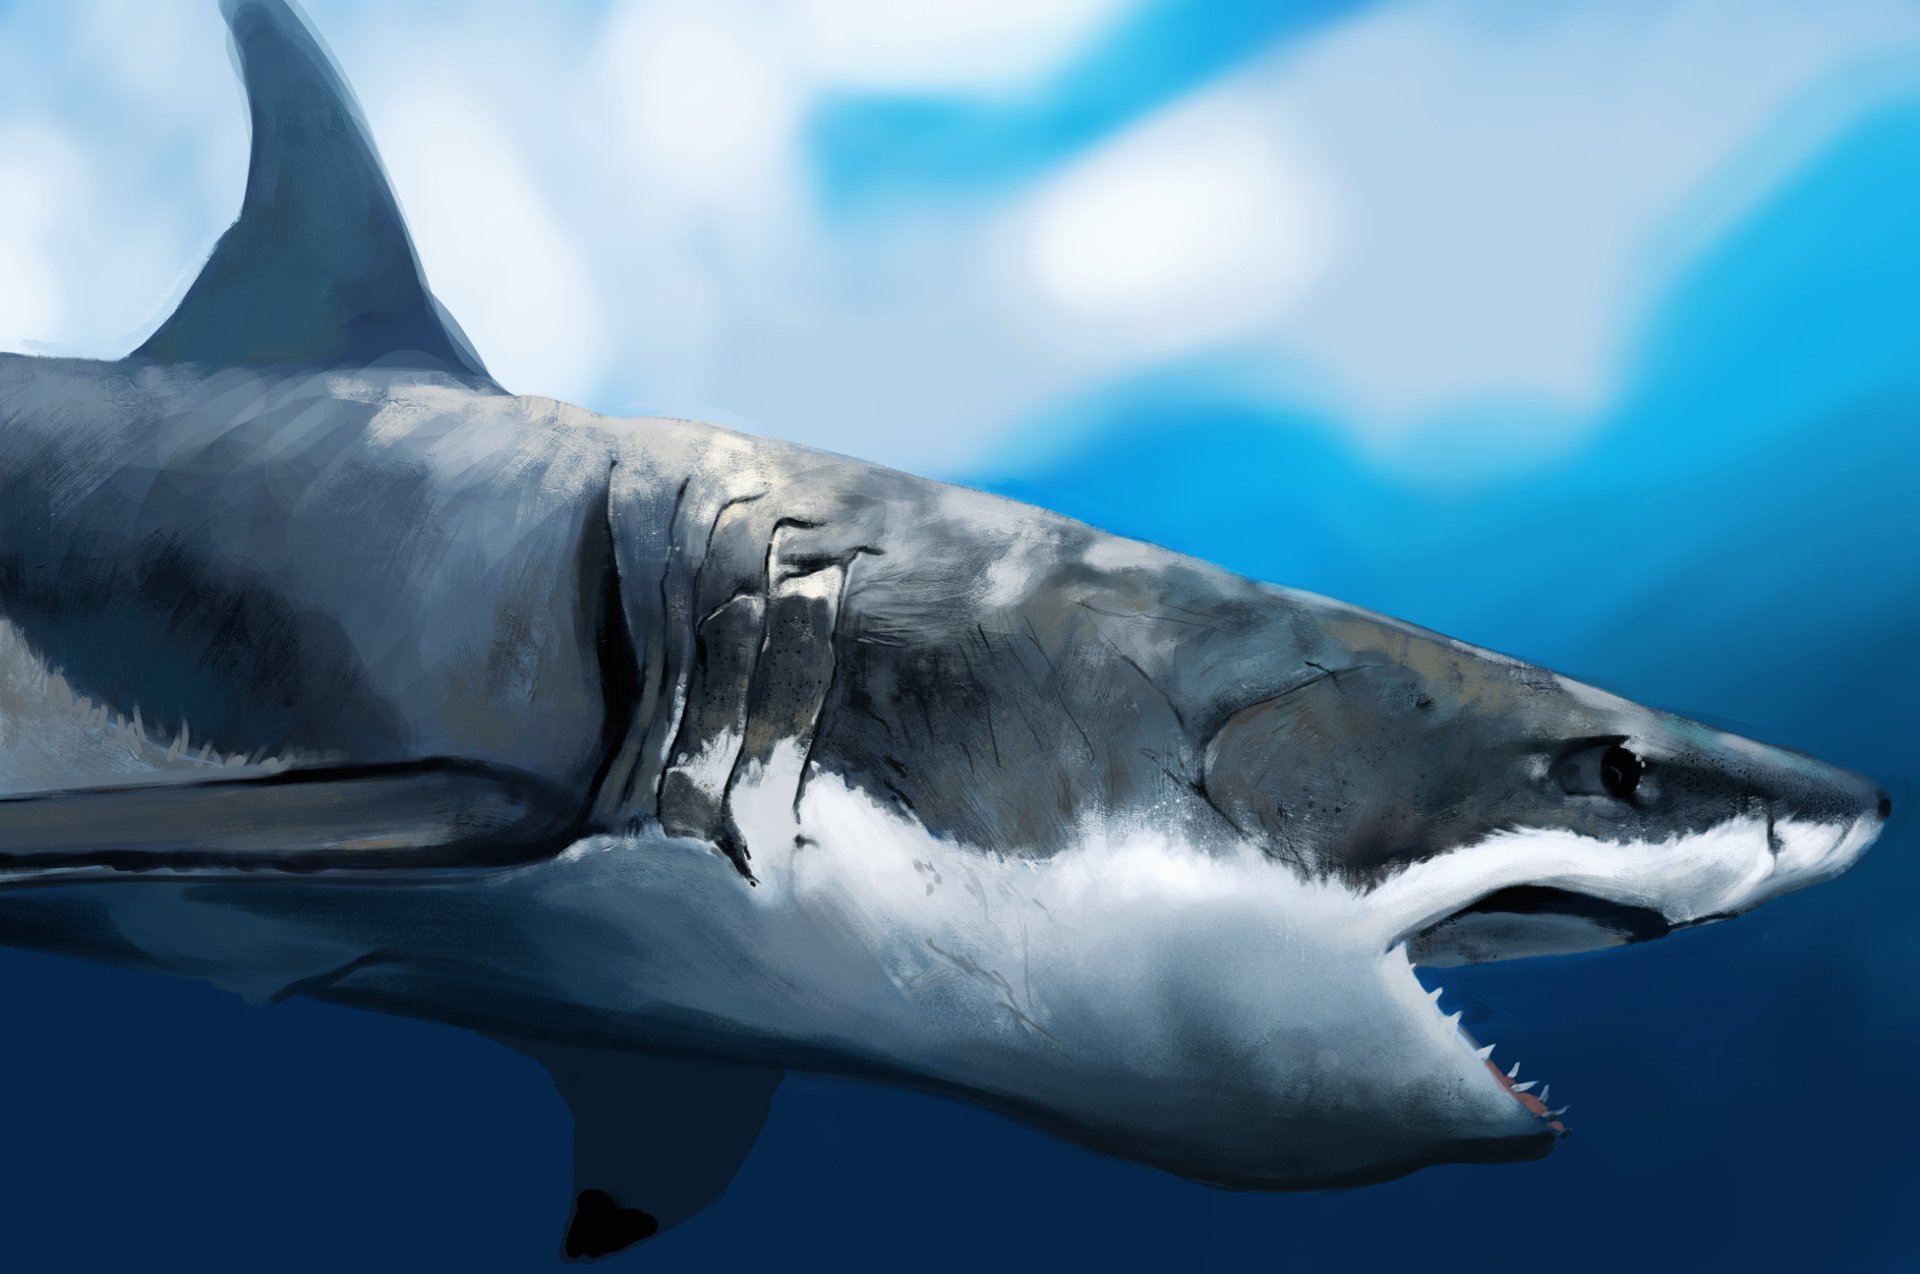 köpek wallpaper,great white shark,shark,fish,lamniformes,cartilaginous fish